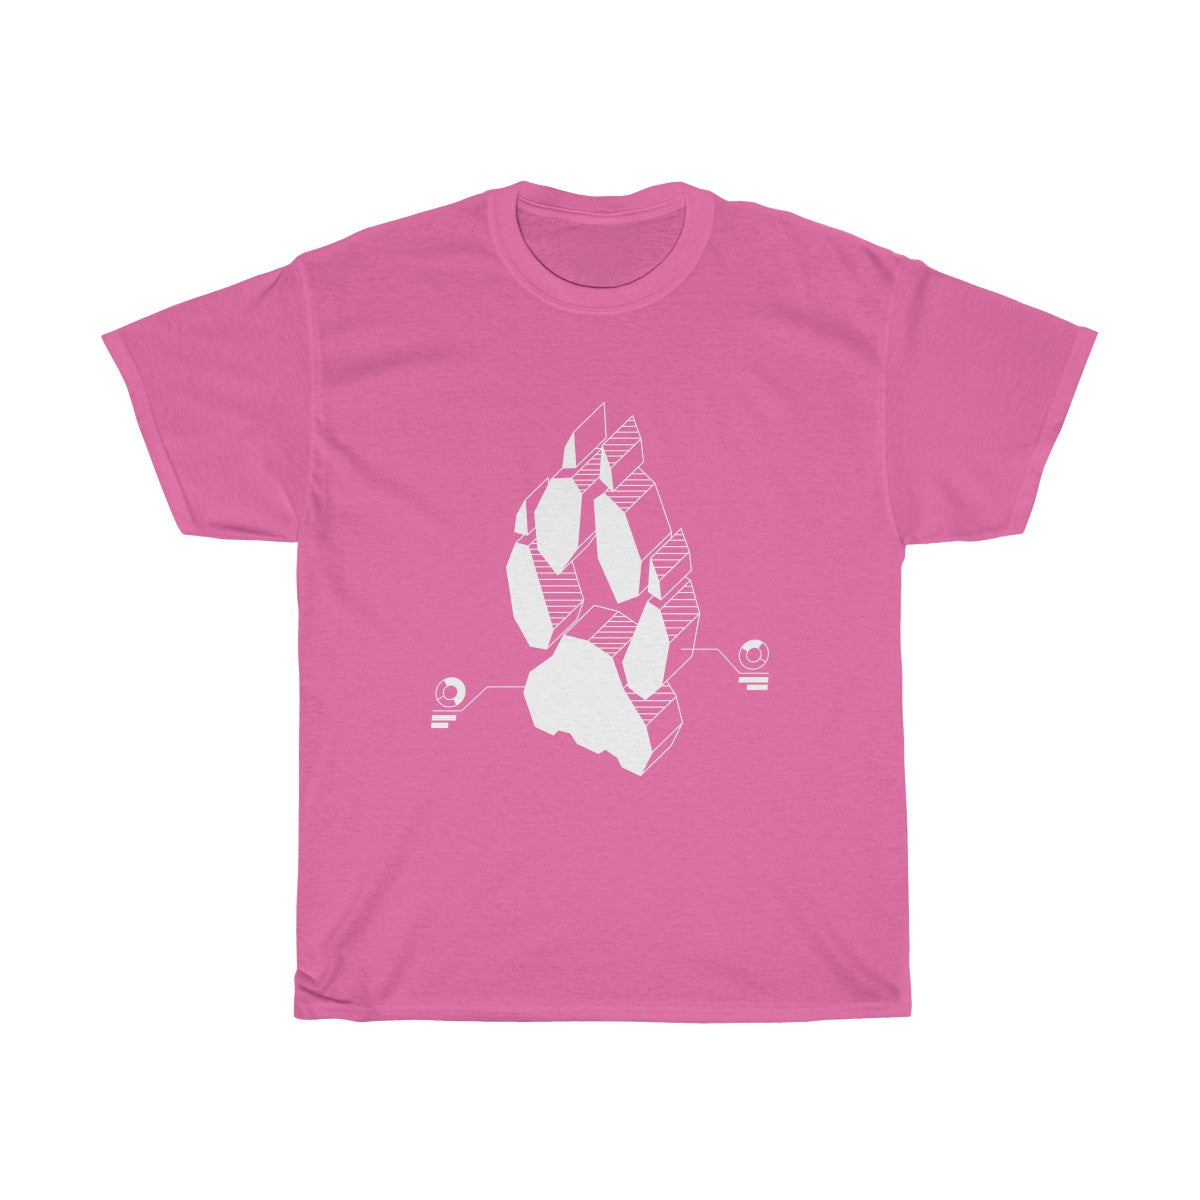 Techno Fox - T-Shirt T-Shirt Wexon Pink S 